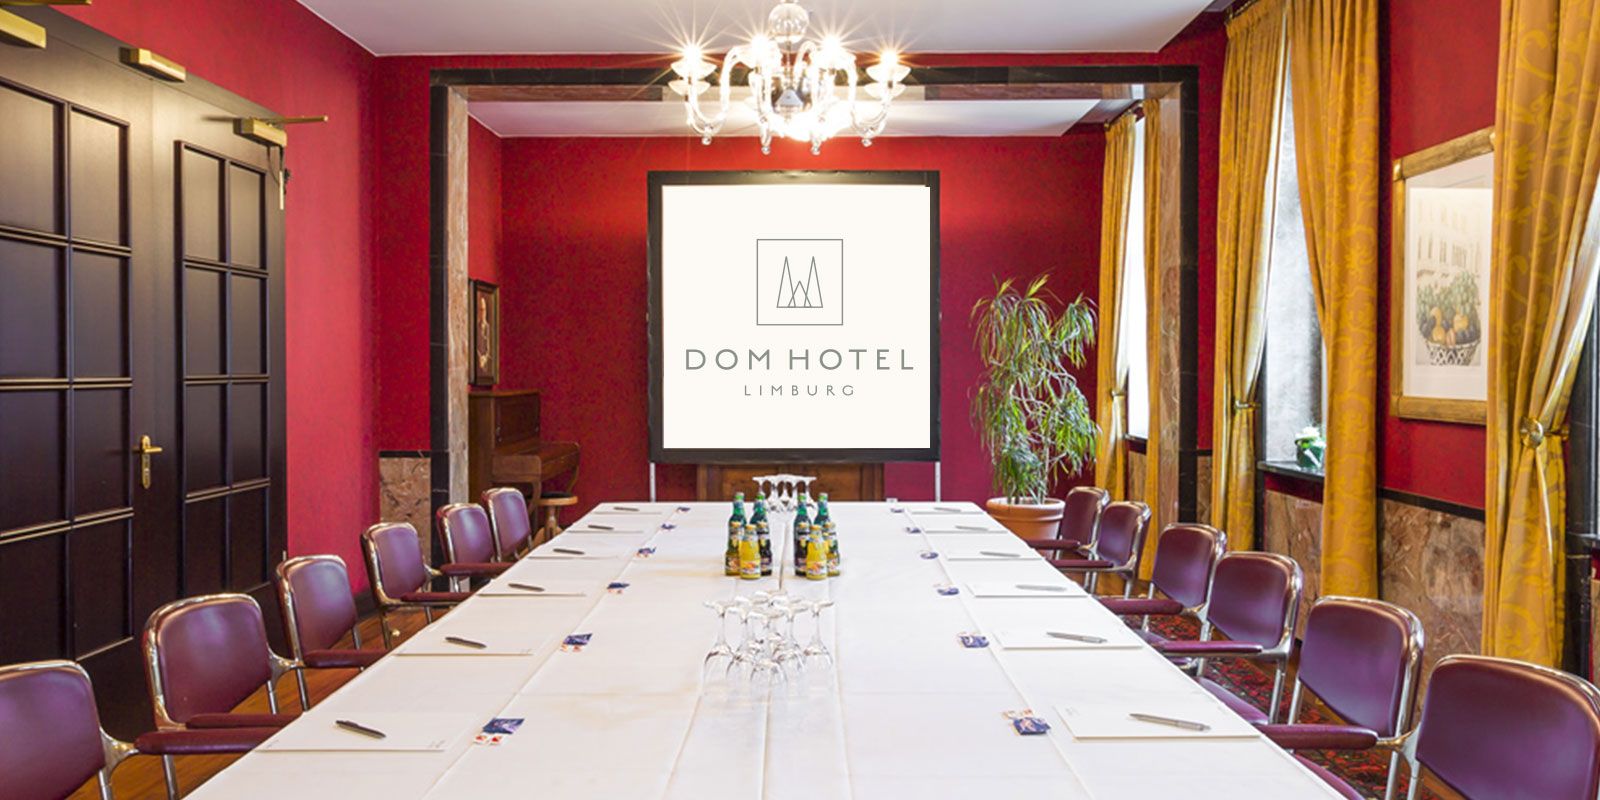 Ihre Tagung im DOM HOTEL Limburg